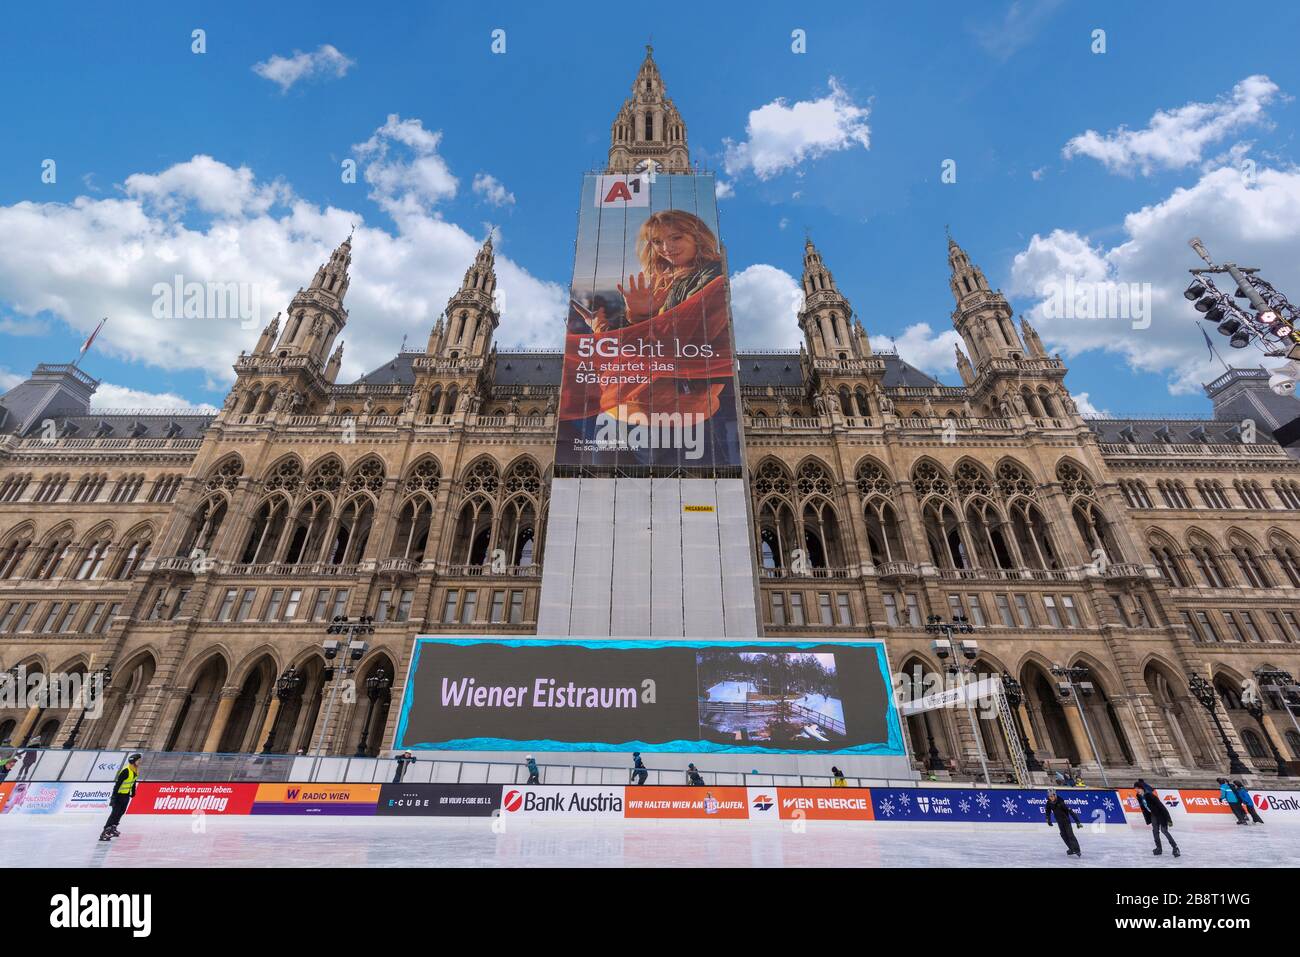 VIENA, AUSTRIA. Patinaje sobre hielo en el Wiener Eistraum. El Wiener Rathaus - Ayuntamiento de Viena. El gobierno de la ciudad lo establece cada invierno. Foto de stock